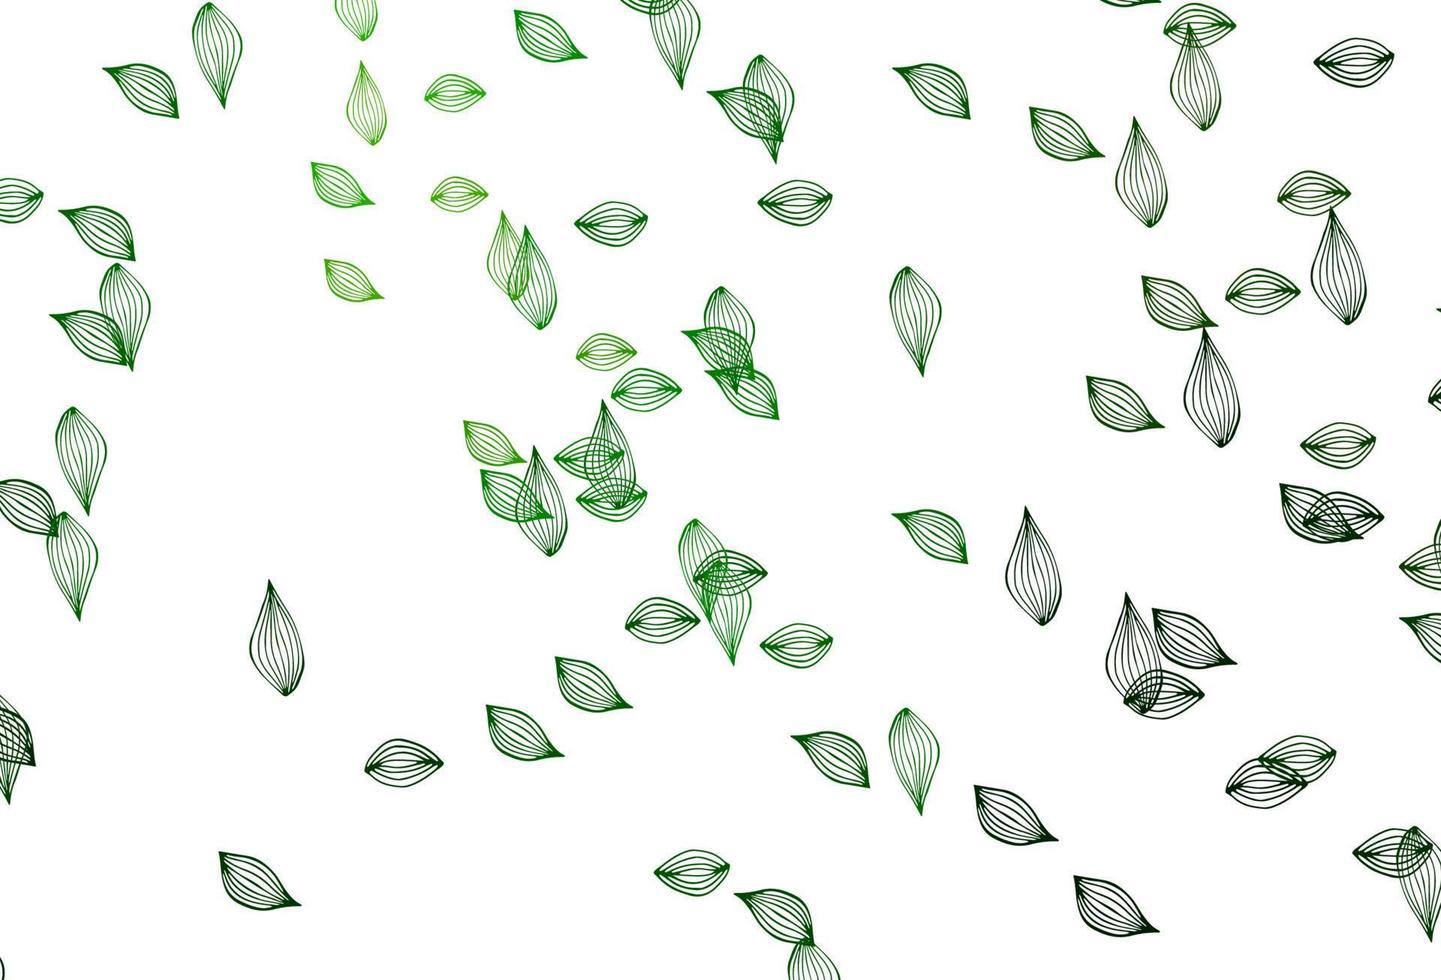 modello di doodle di vettore verde chiaro.